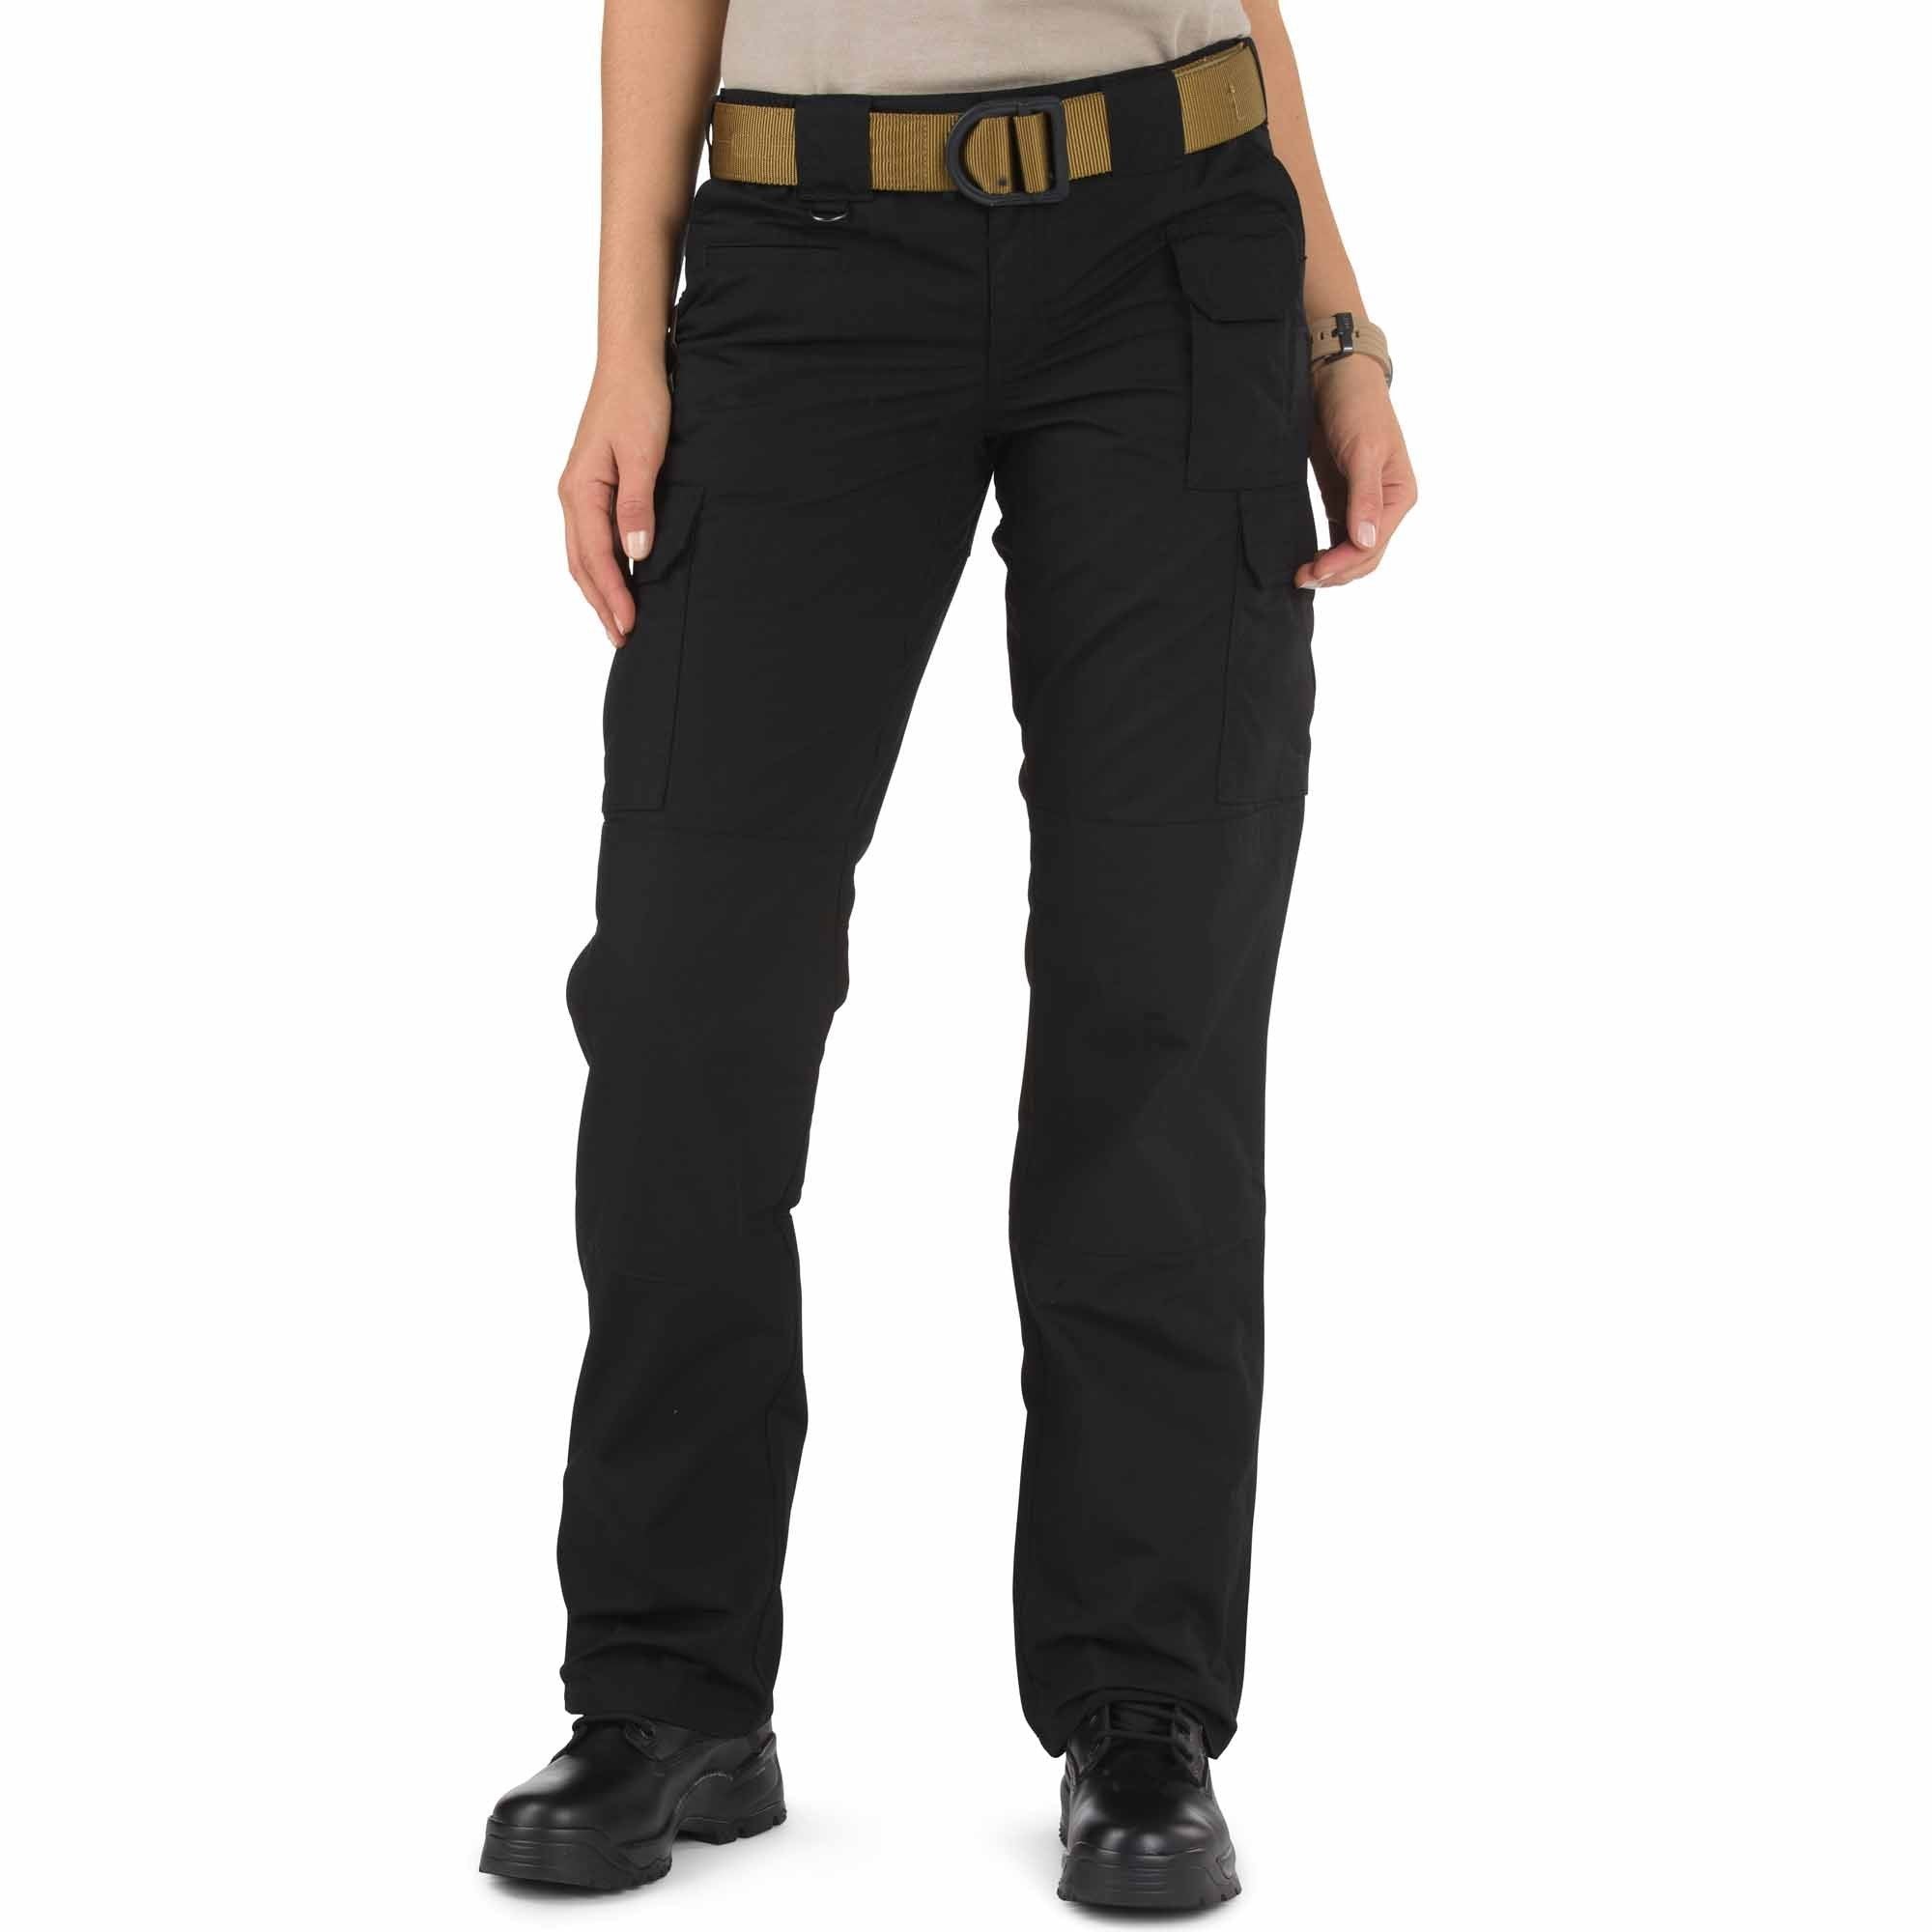 5.11 Women's TACLITE Pro Pant Black Pants 5.11 Tactical 2 Regular Tactical Gear Supplier Tactical Distributors Australia